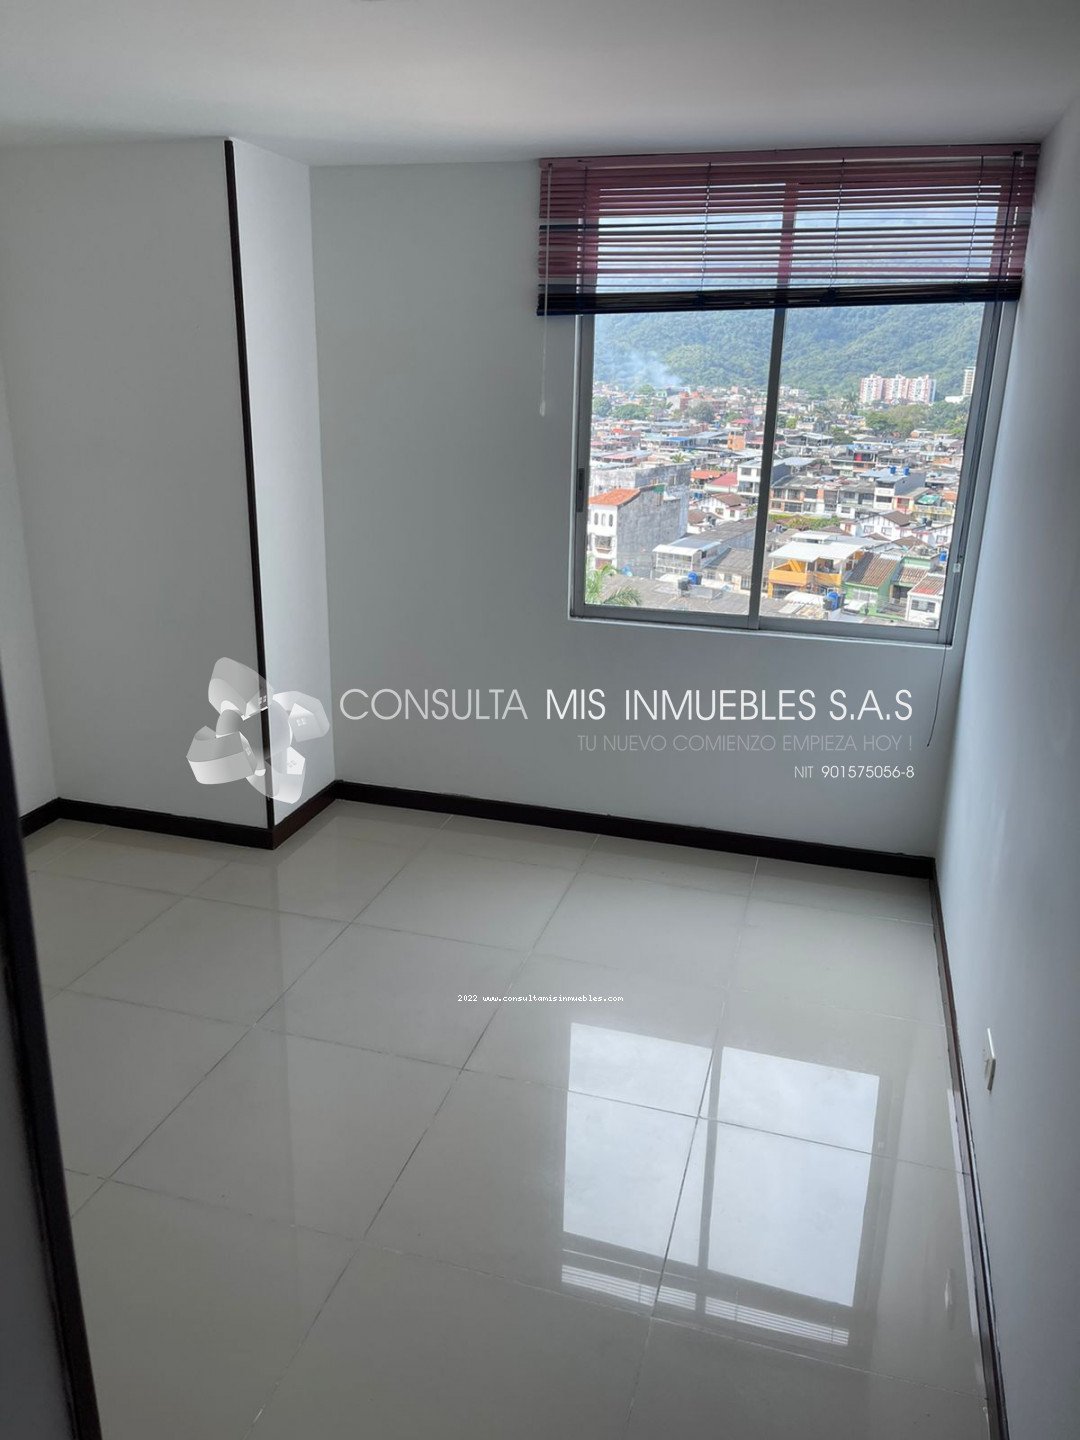 Vendo Apartamento en el Barrio Balcones de Provenza en Ibagué, Tolima de Colombia | Consulta Mis Inmuebles S.A.S. | Tu nuevo comienzo empieza hoy!